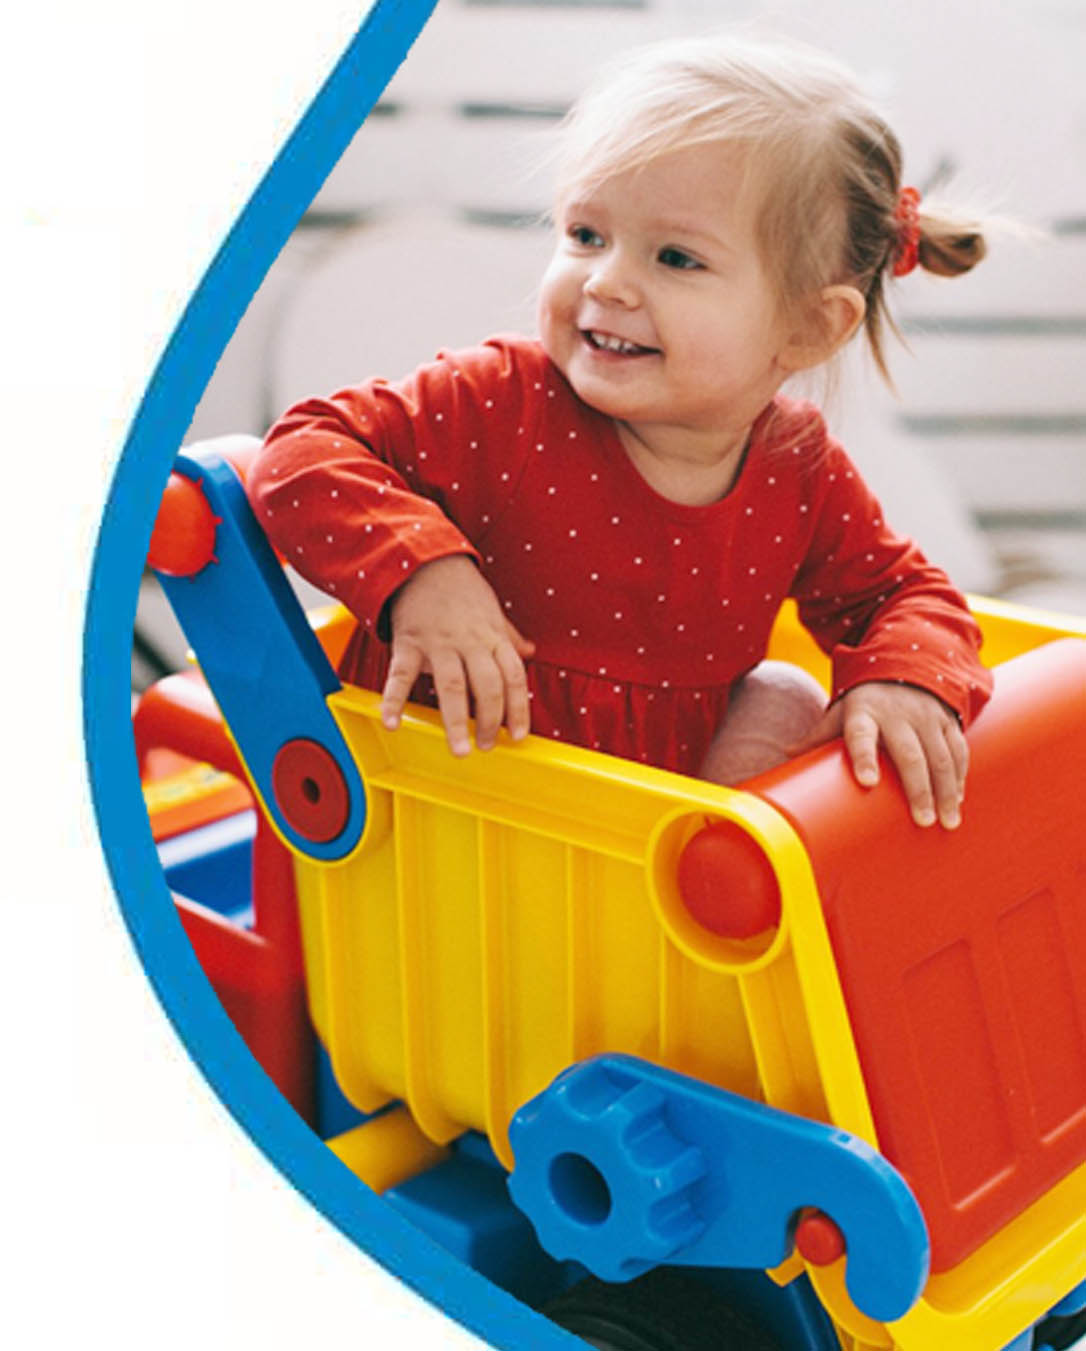 Pieni lapsi istuu leikkiauton kyydissä ja nauraa